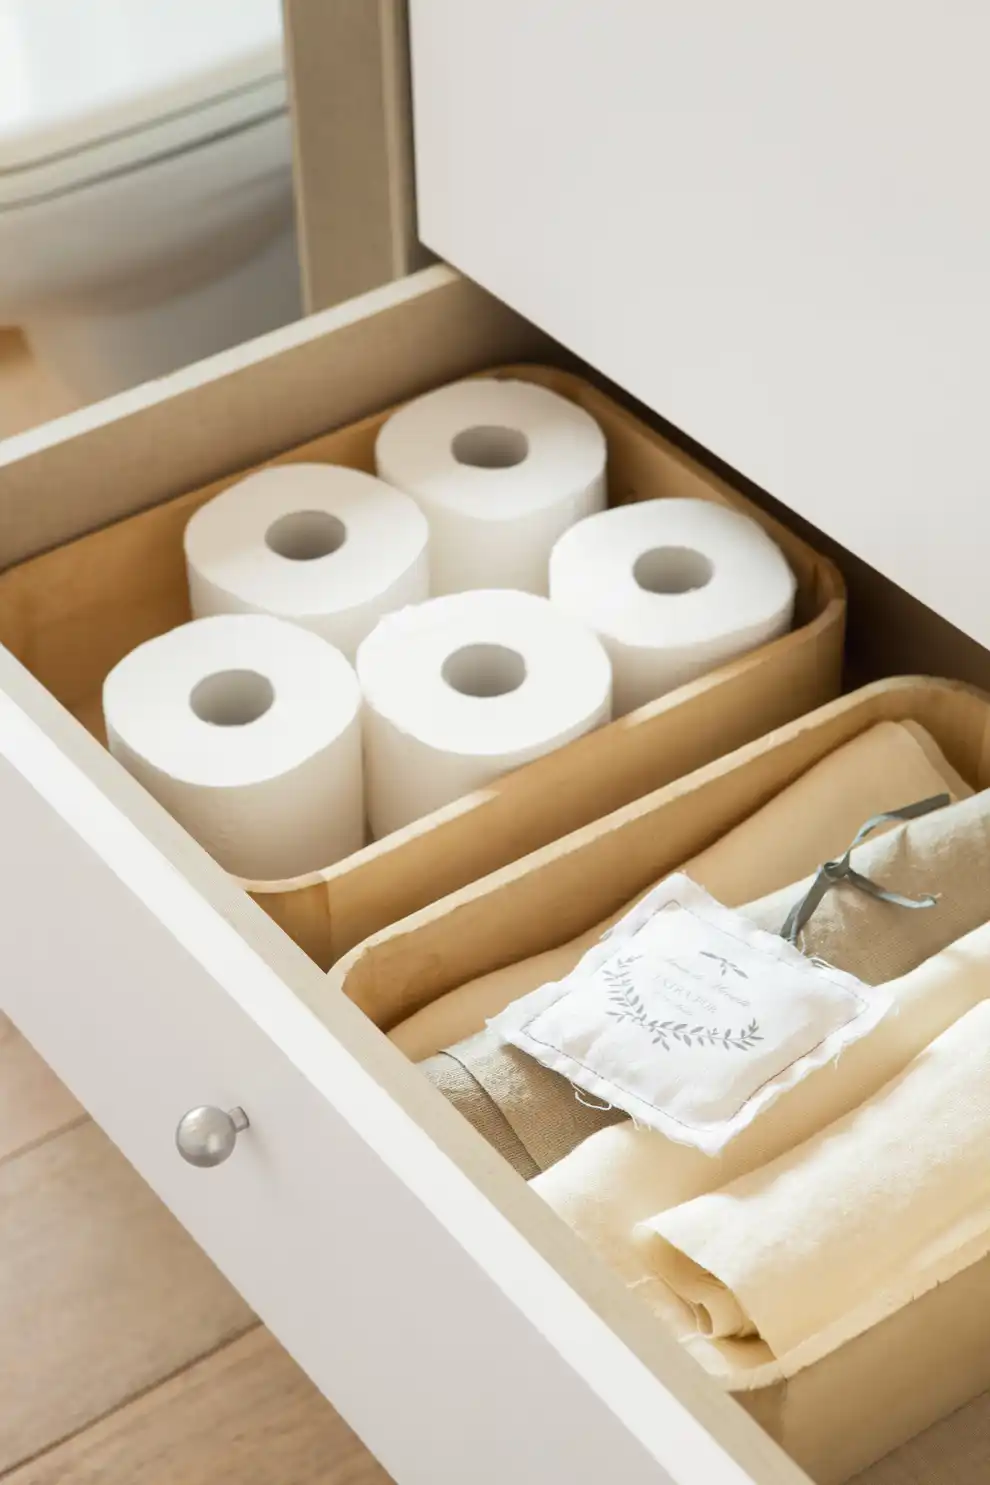 Rollos de papel higiénico en un cajón del baño